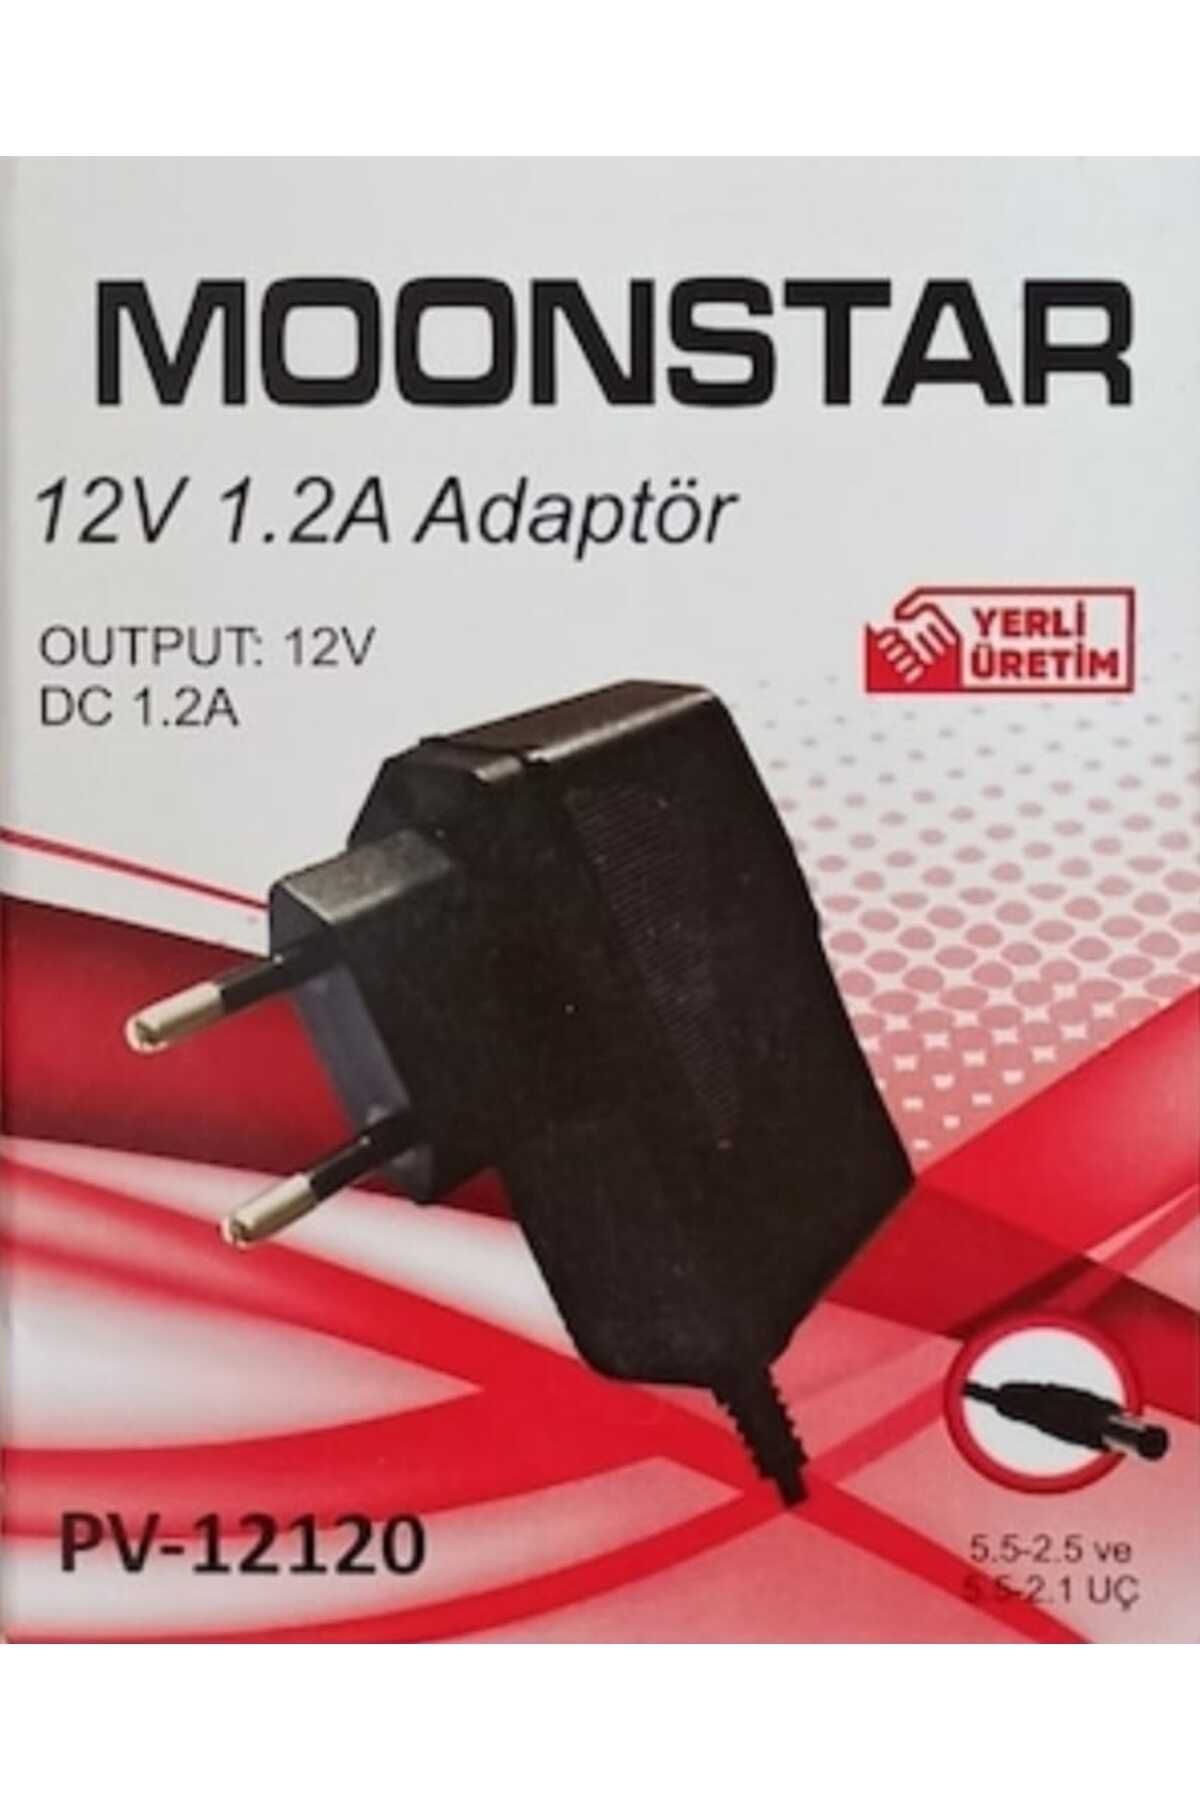 Moonstar 12 Volt 1.2 Amper ( 5.5-2.5 Ve 5.5-2.1 Uç ) Moonstar piriz tipi Adaptörü